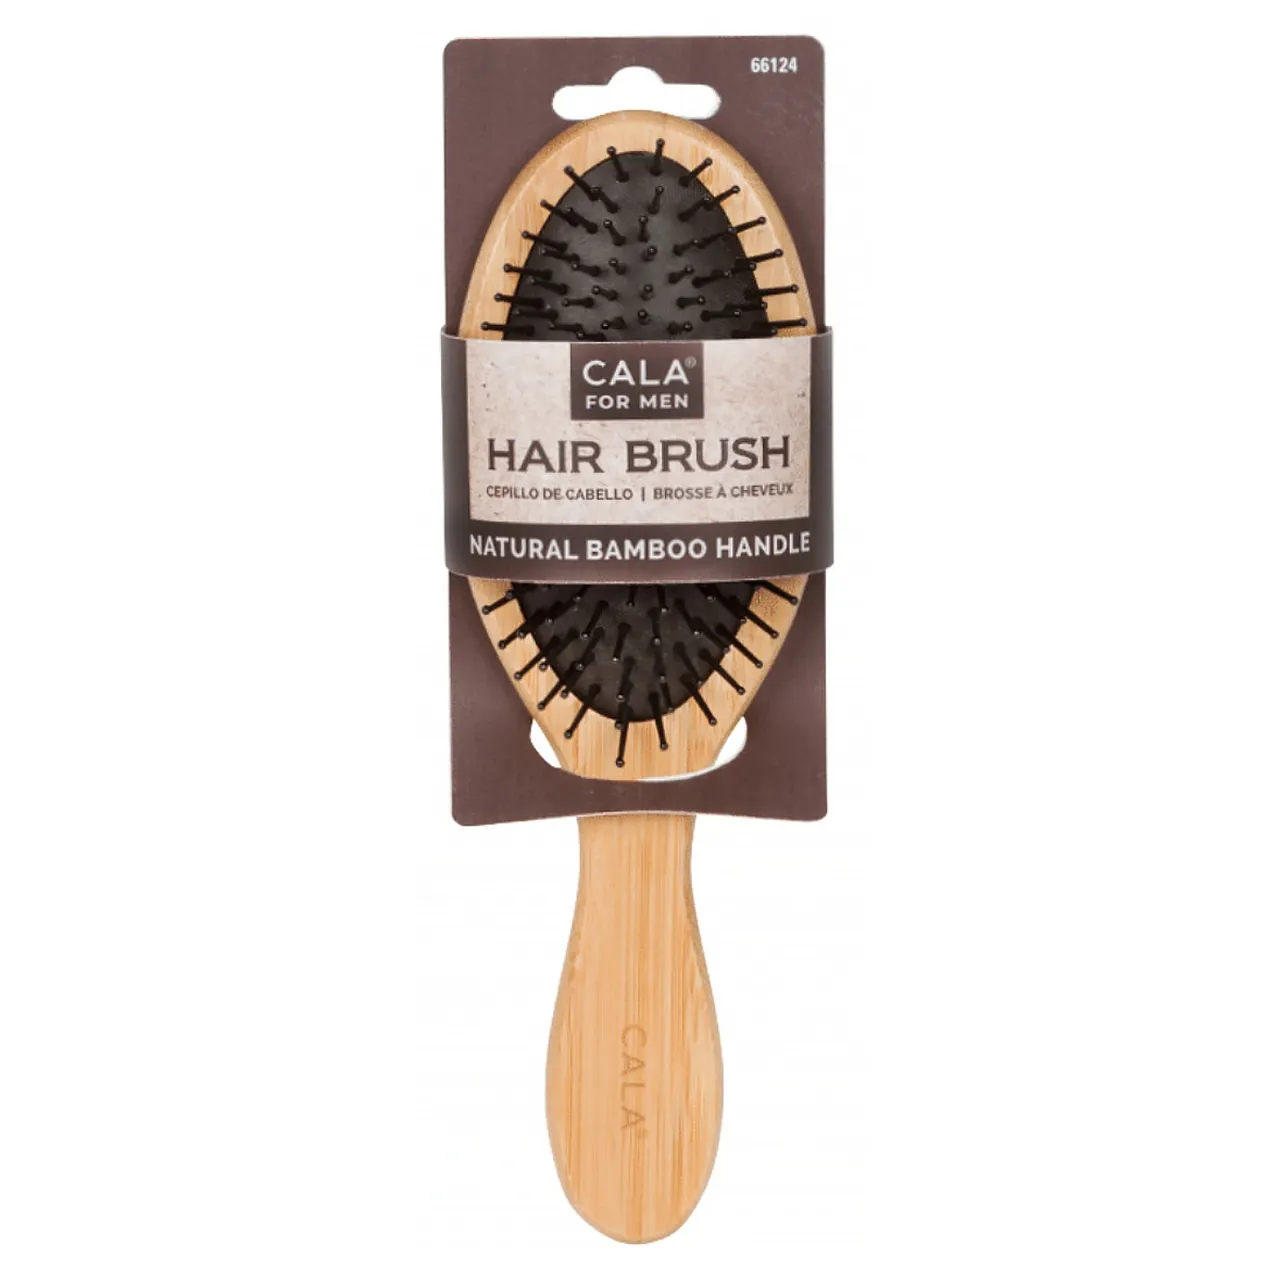 Cepillo de Cabello Natural Bamboo Hair Brush Cala 66124